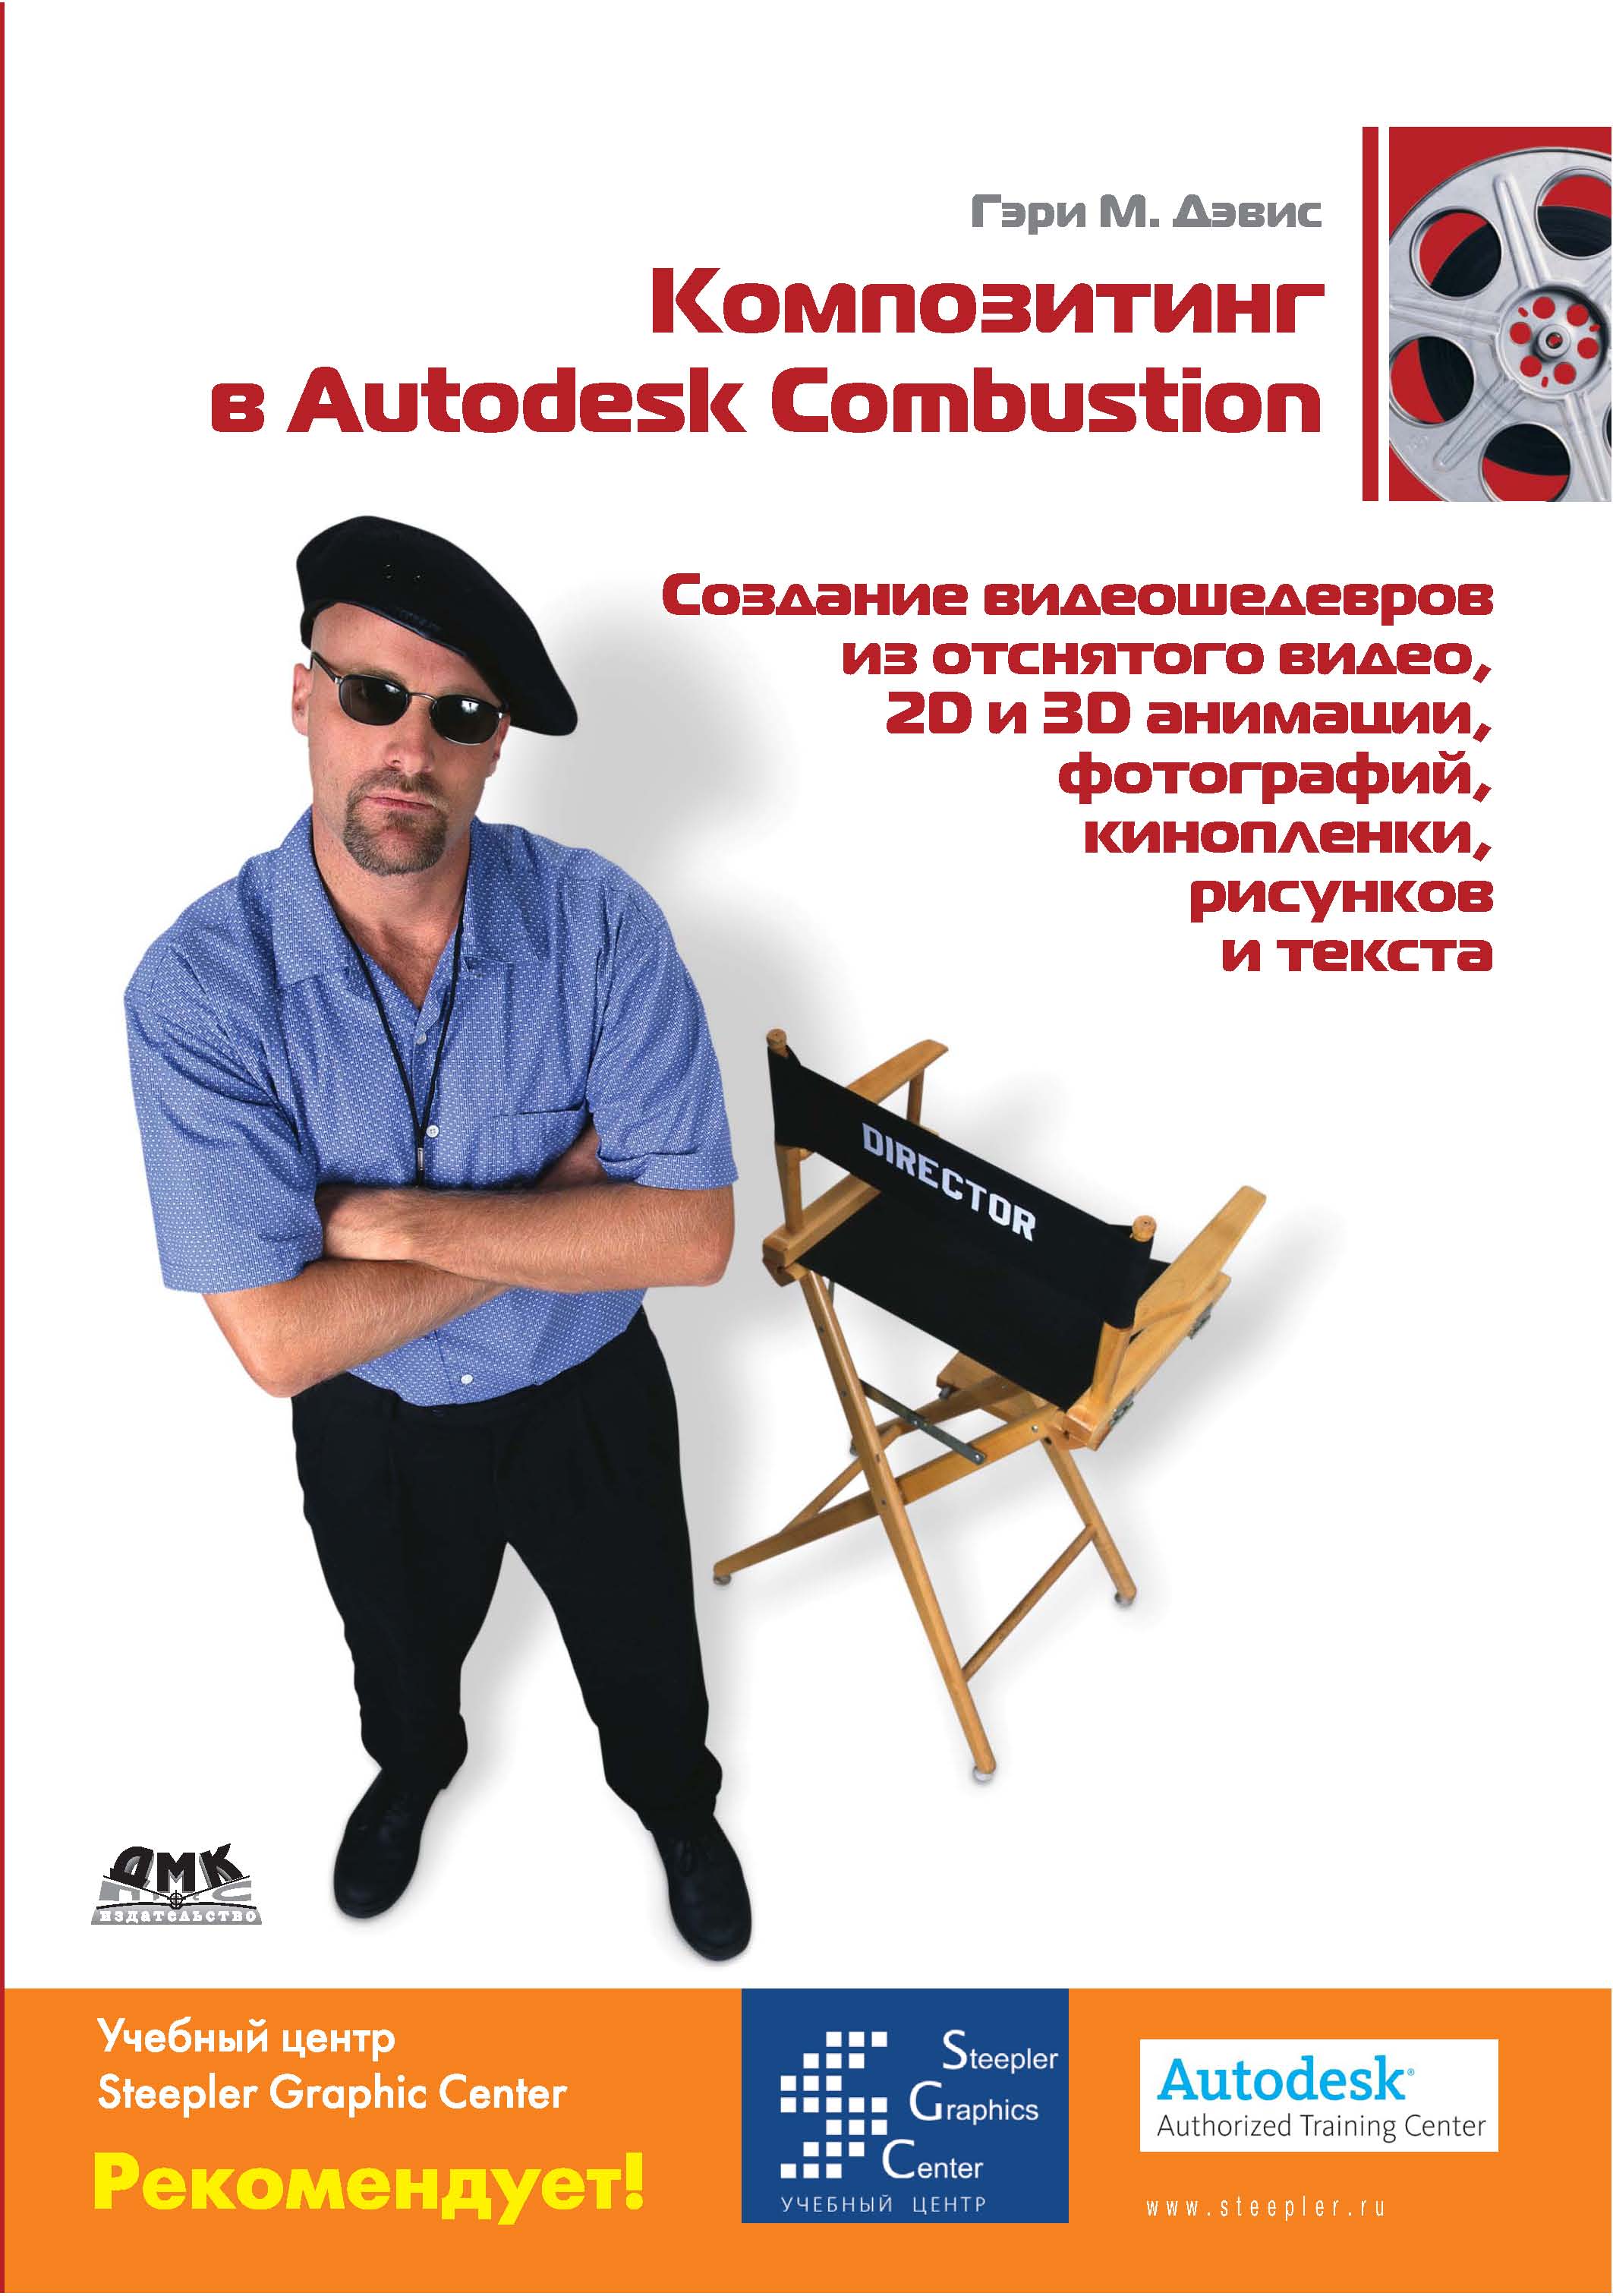 Книга  Композитинг в Autodesk Combustion созданная Гэри М. Дэвис может относится к жанру зарубежная компьютерная литература, программы. Стоимость электронной книги Композитинг в Autodesk Combustion с идентификатором 44336727 составляет 199.00 руб.